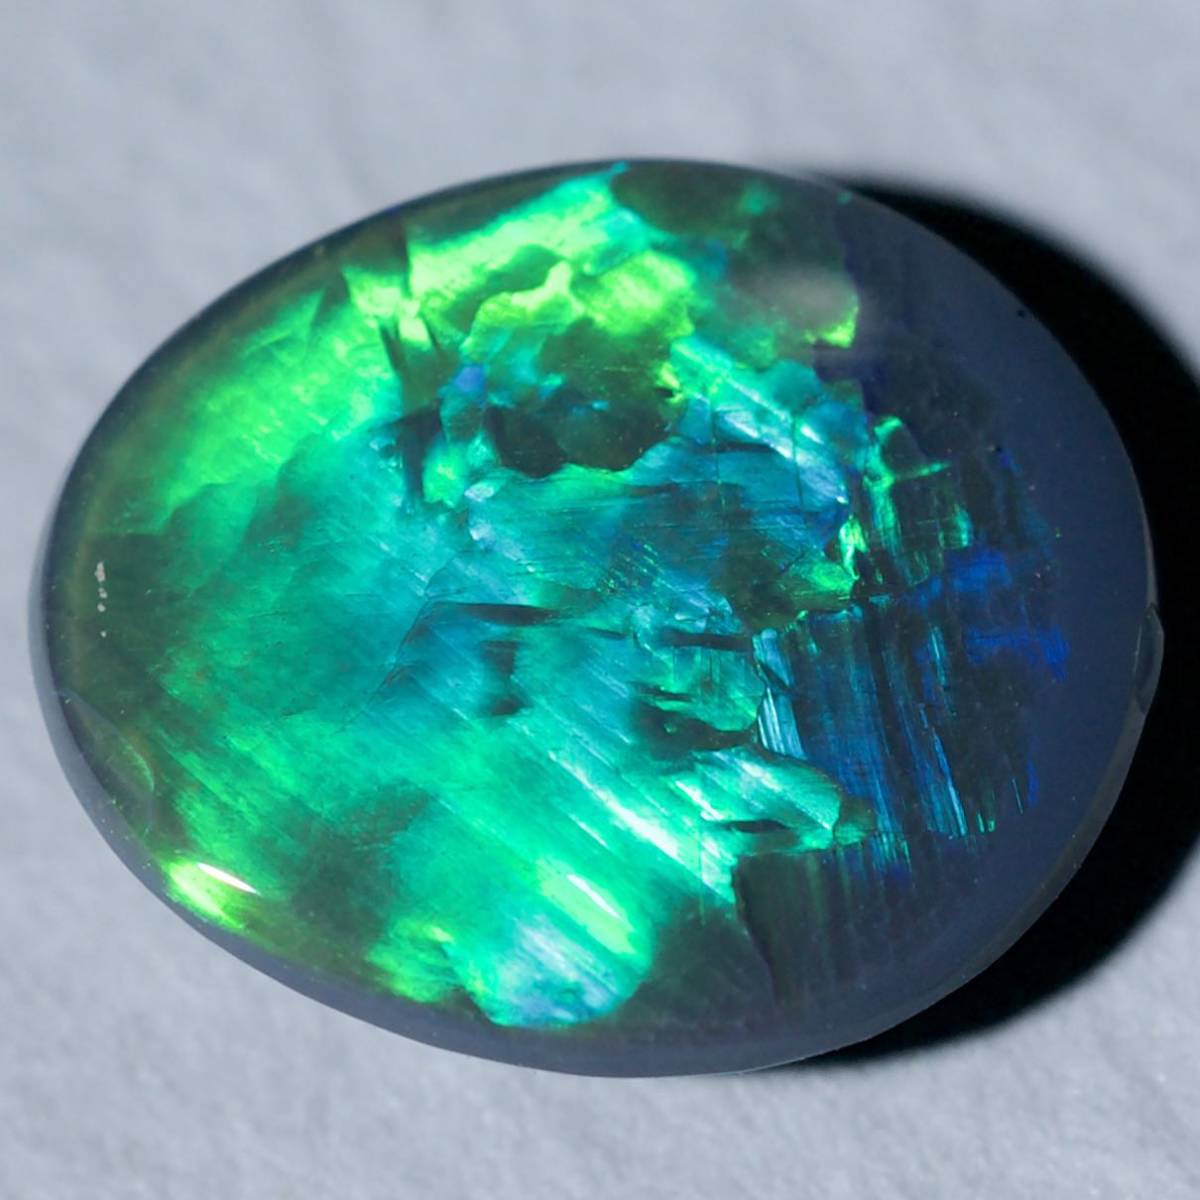  натуральный black opal / разрозненный / вес 1.18ct/ размер длина 9.1.x ширина 7.7.x высота 2.8./ Австралия производство / натуральный опал / натуральный камень 